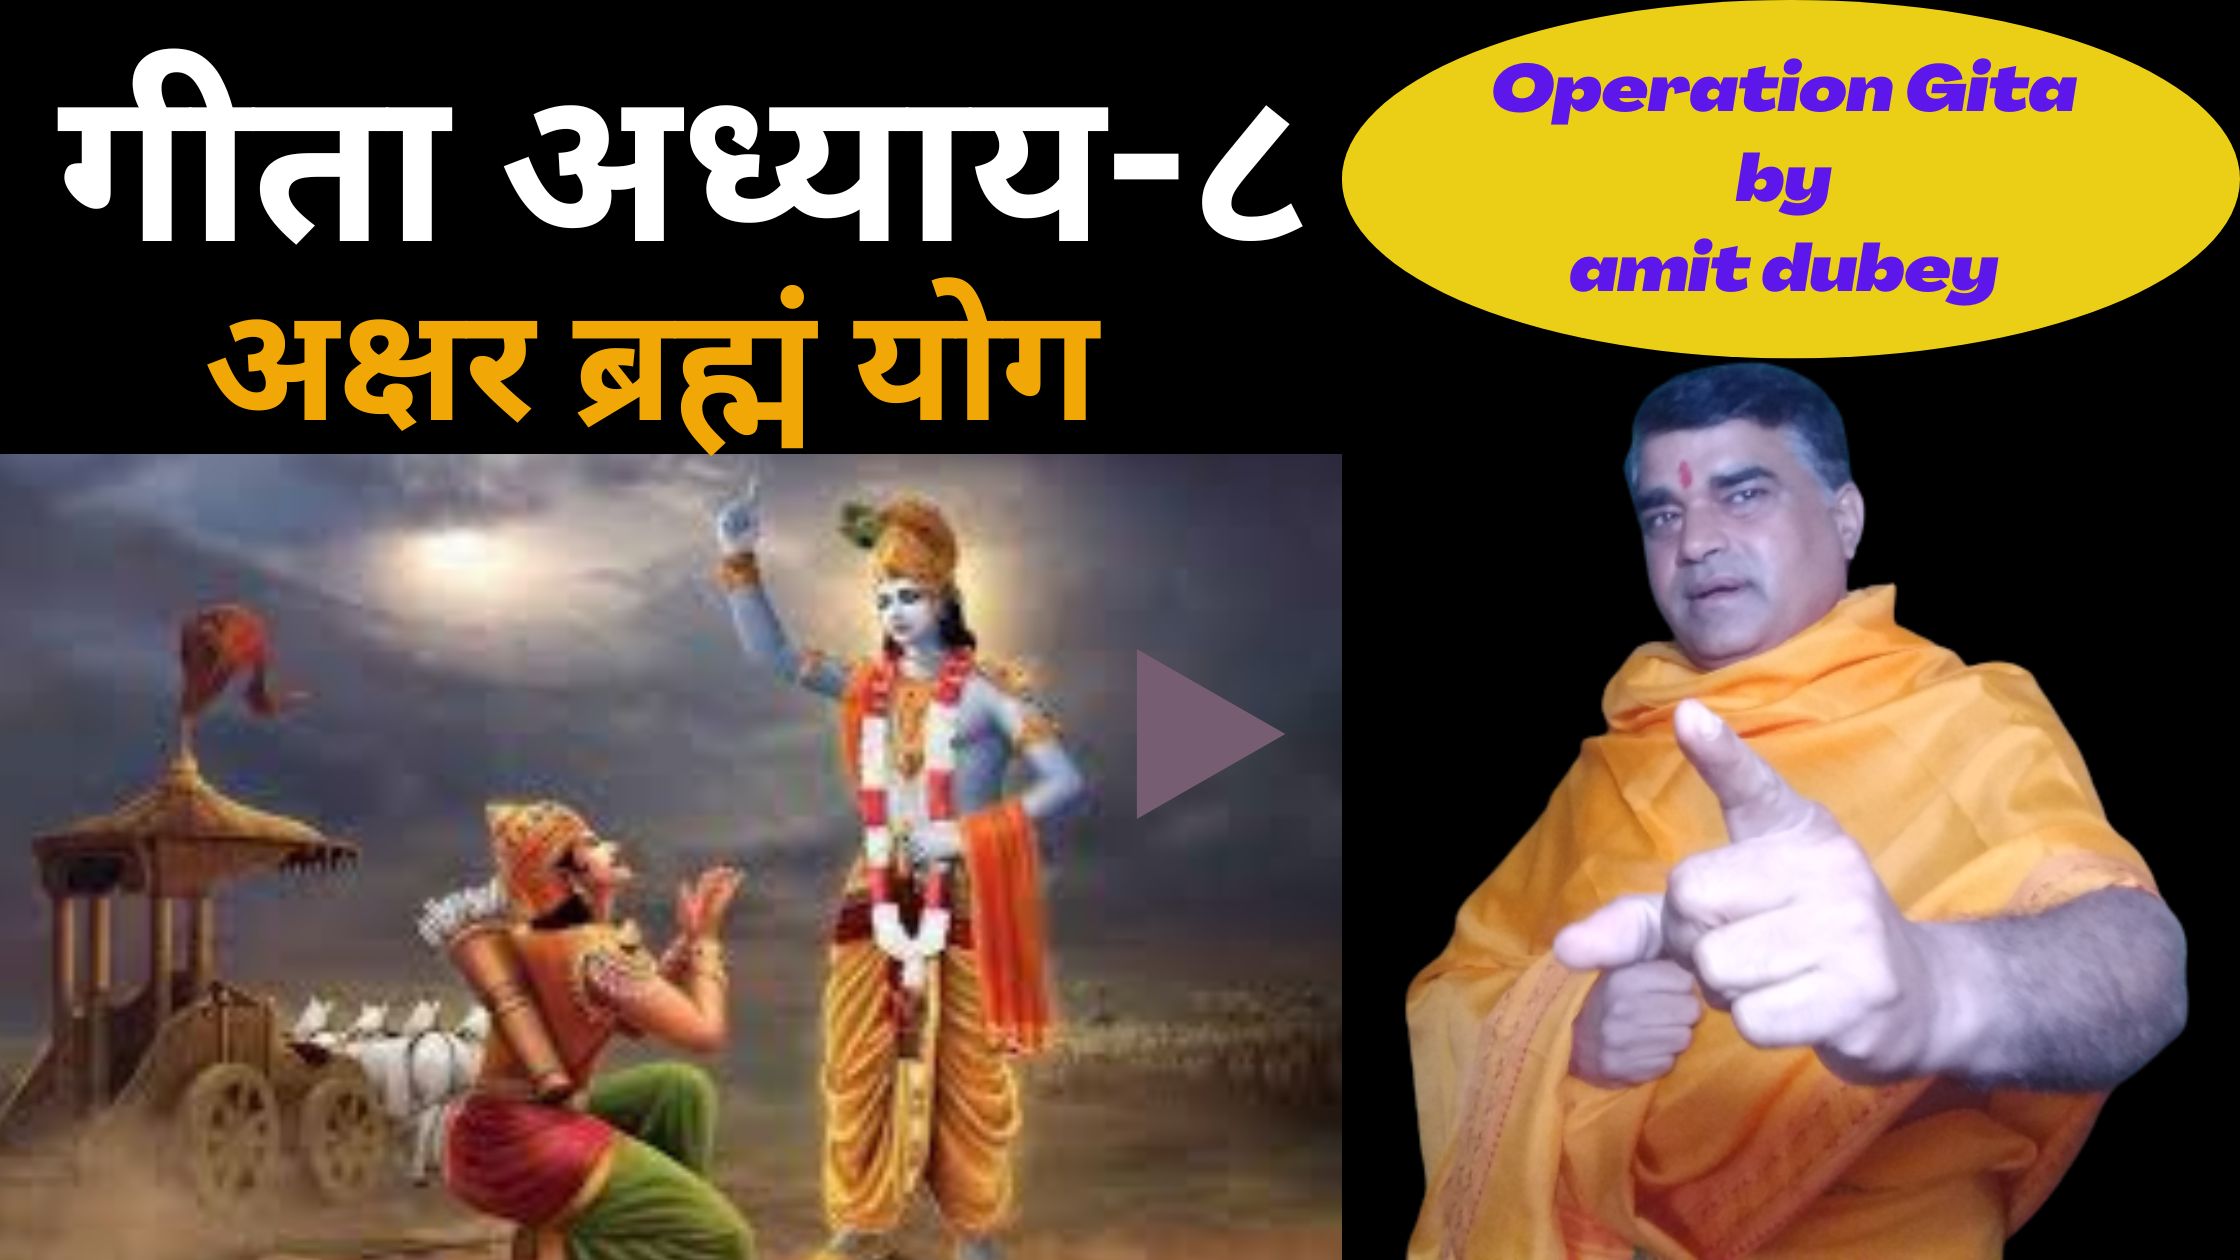 गीता अध्याय-८ अक्षर ब्रह्मं योग || Operation Gita